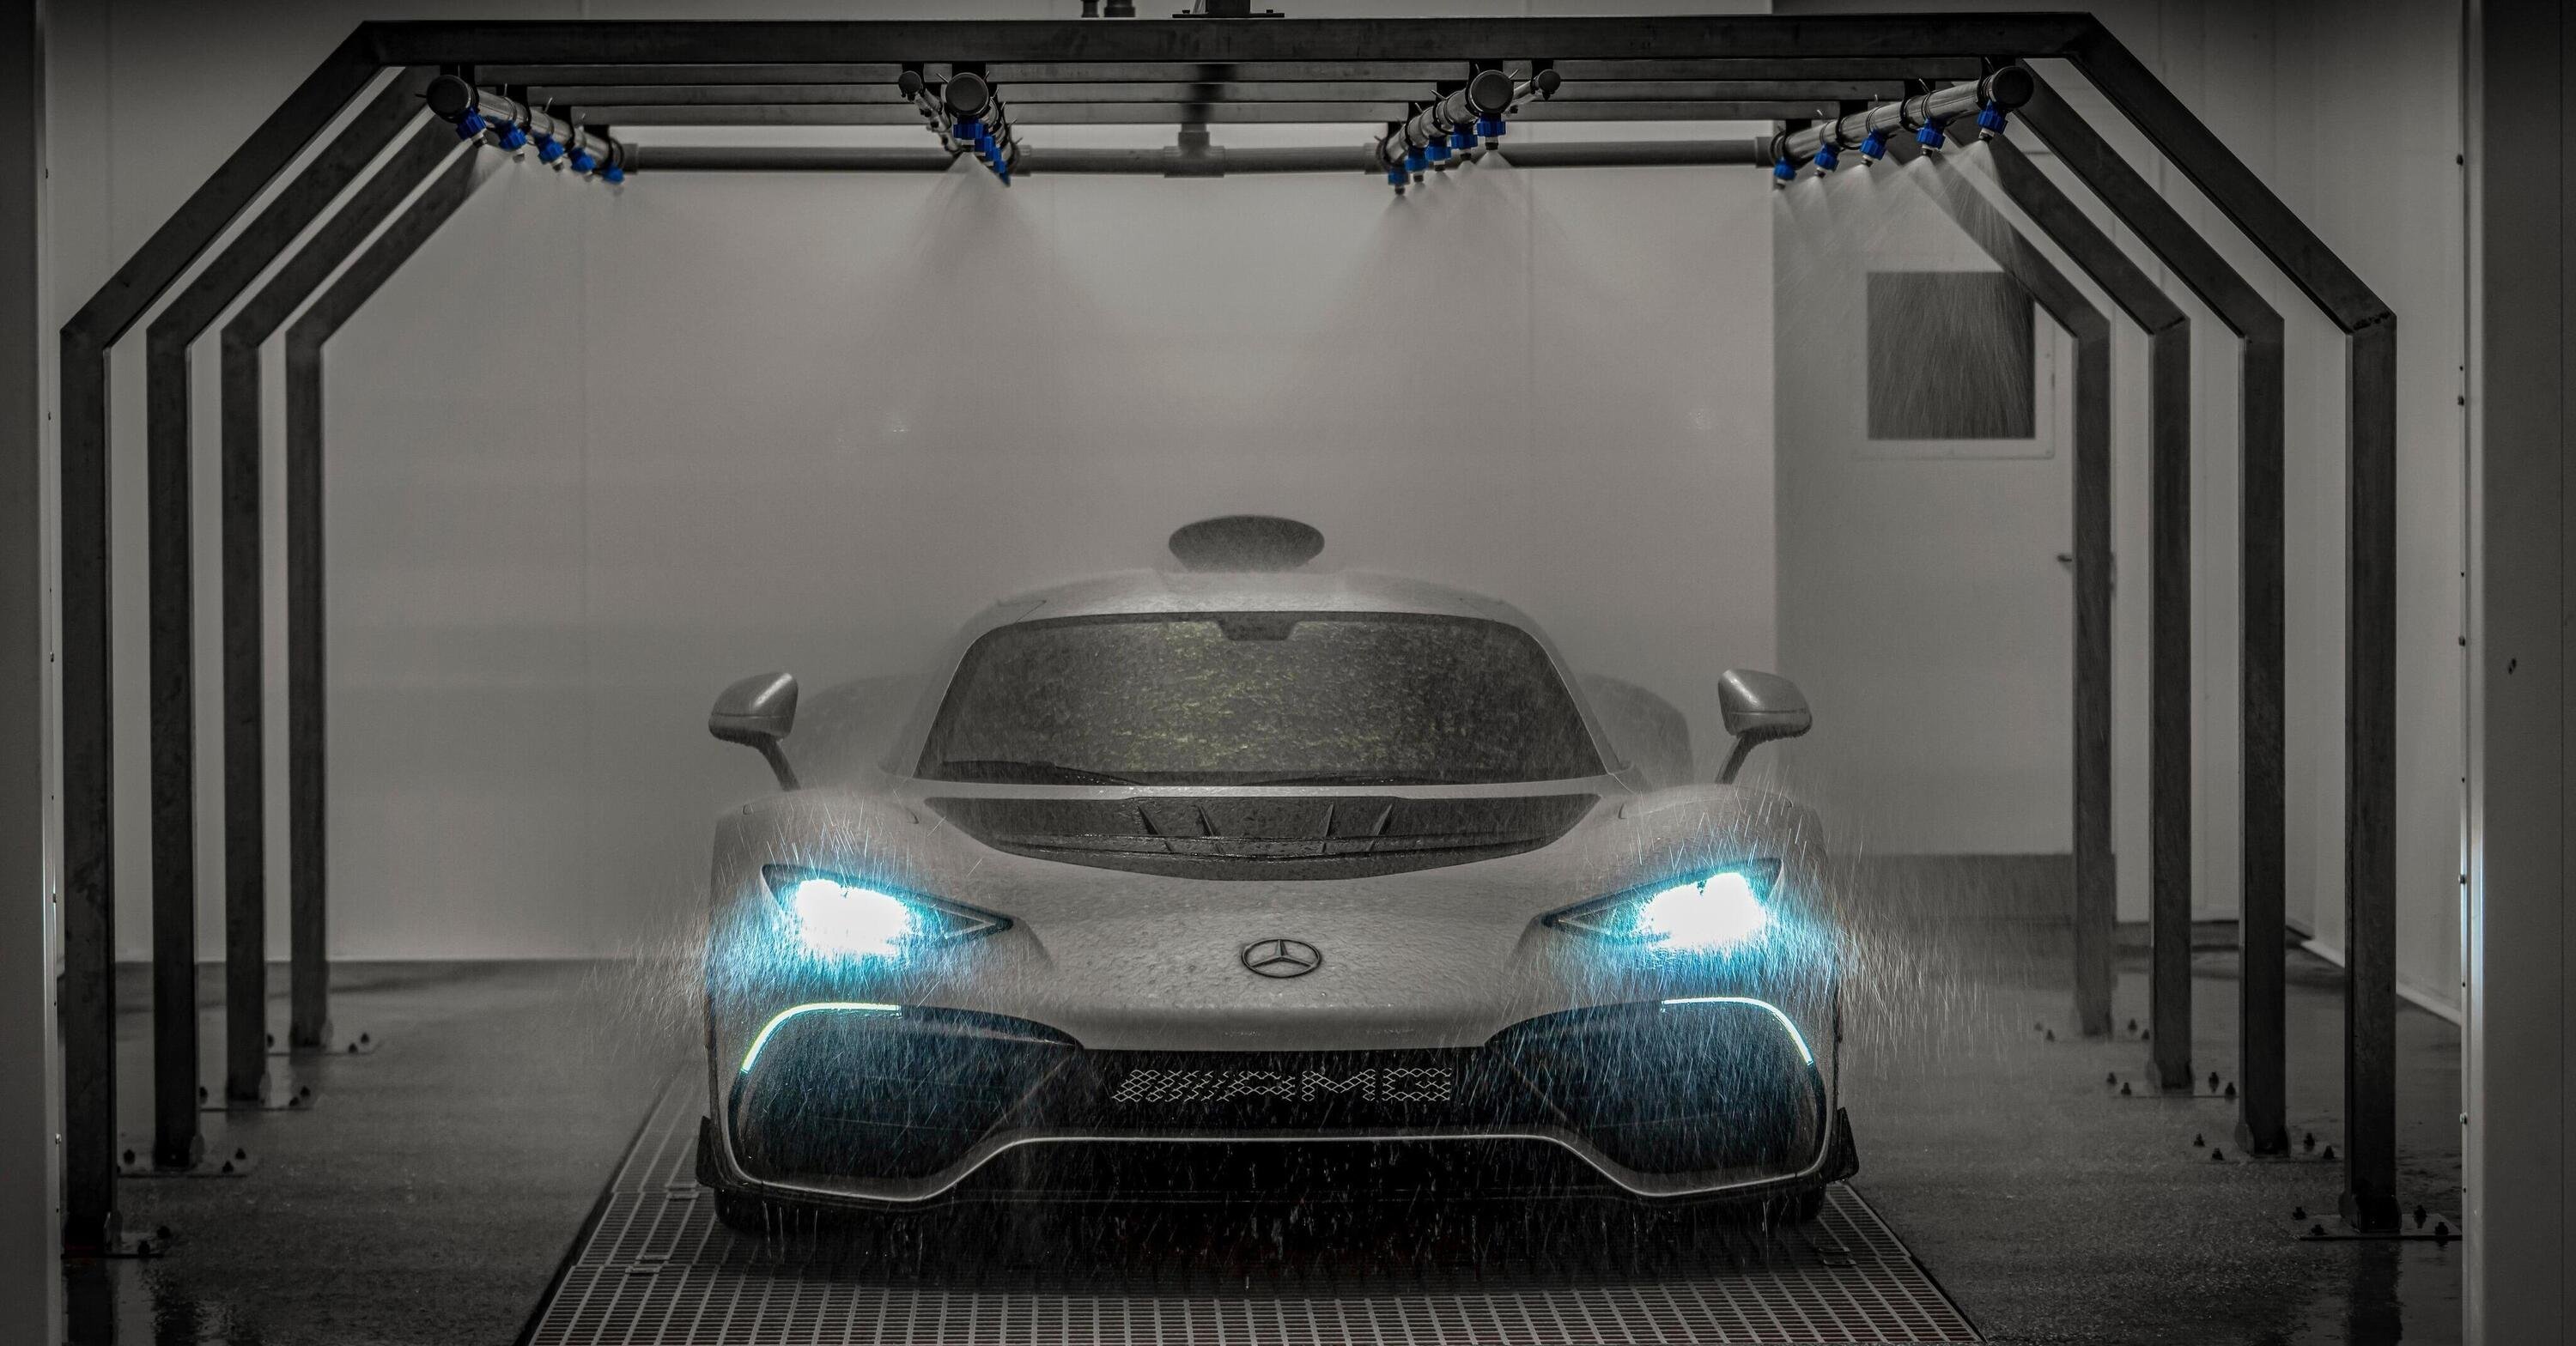 Finalmente, Mercedes avvia la produzione della AMG One